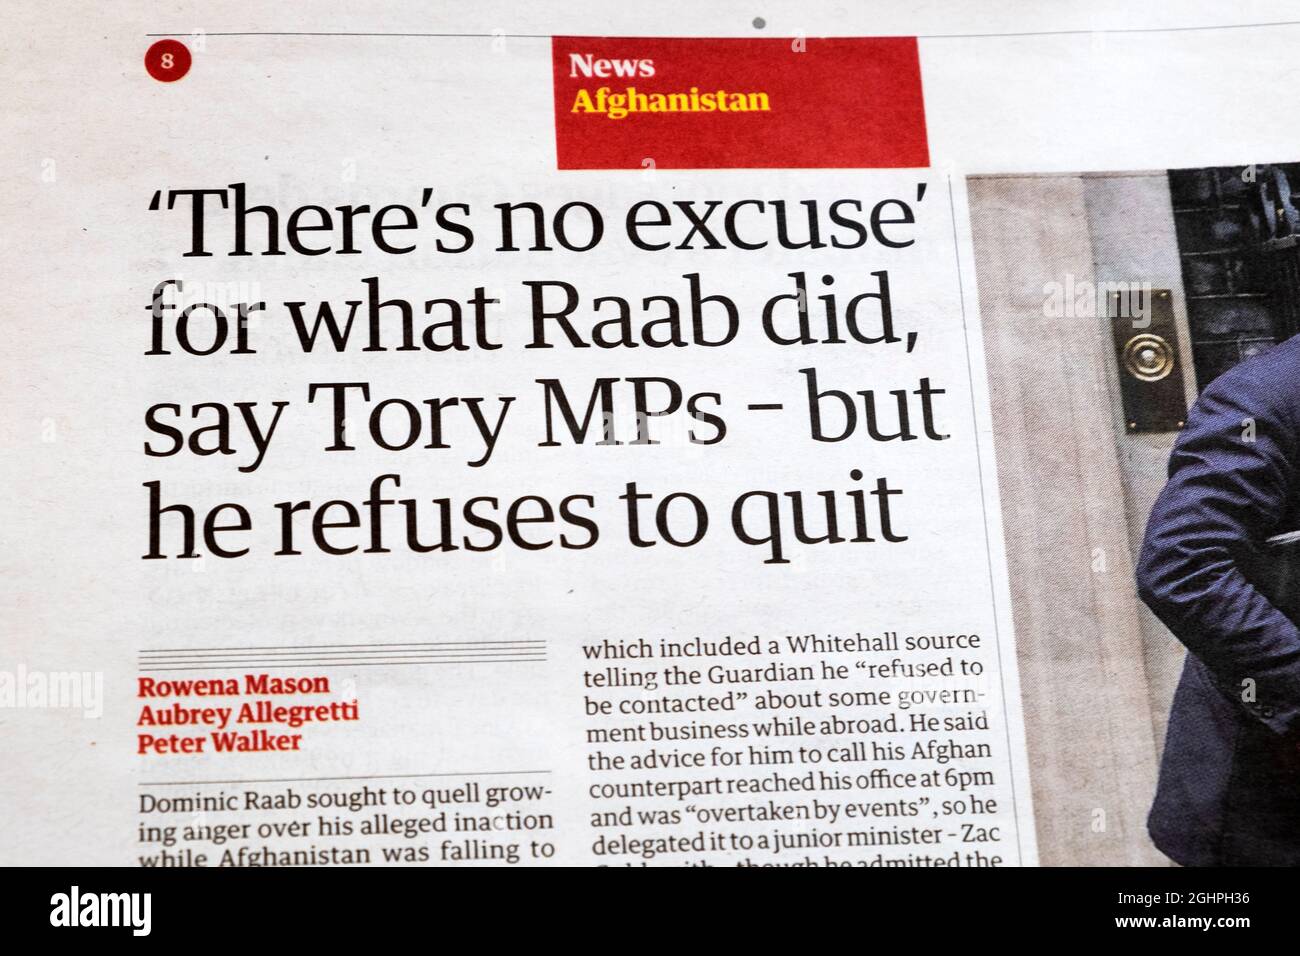 Journal Guardian, article principal « il n'y a aucune excuse » pour ce que Raab a fait, disent les députés Tory - mais il refuse de quitter » 20 août 2021 Londres Angleterre Royaume-Uni Banque D'Images